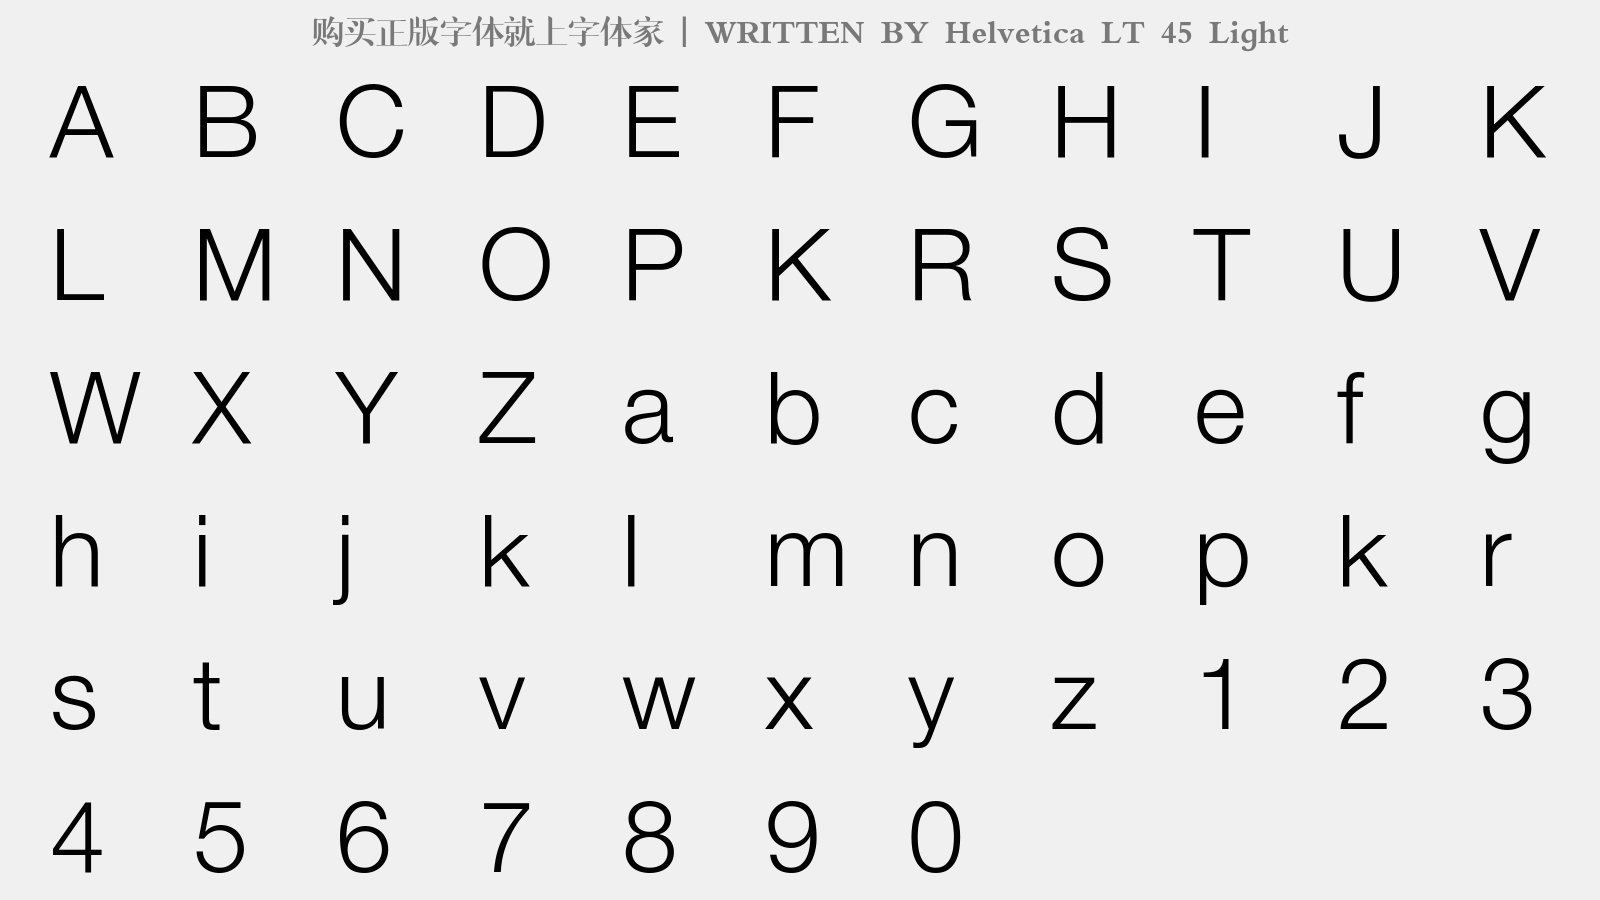 Helvetica LT 45 Light - 大写字母/小写字母/数字